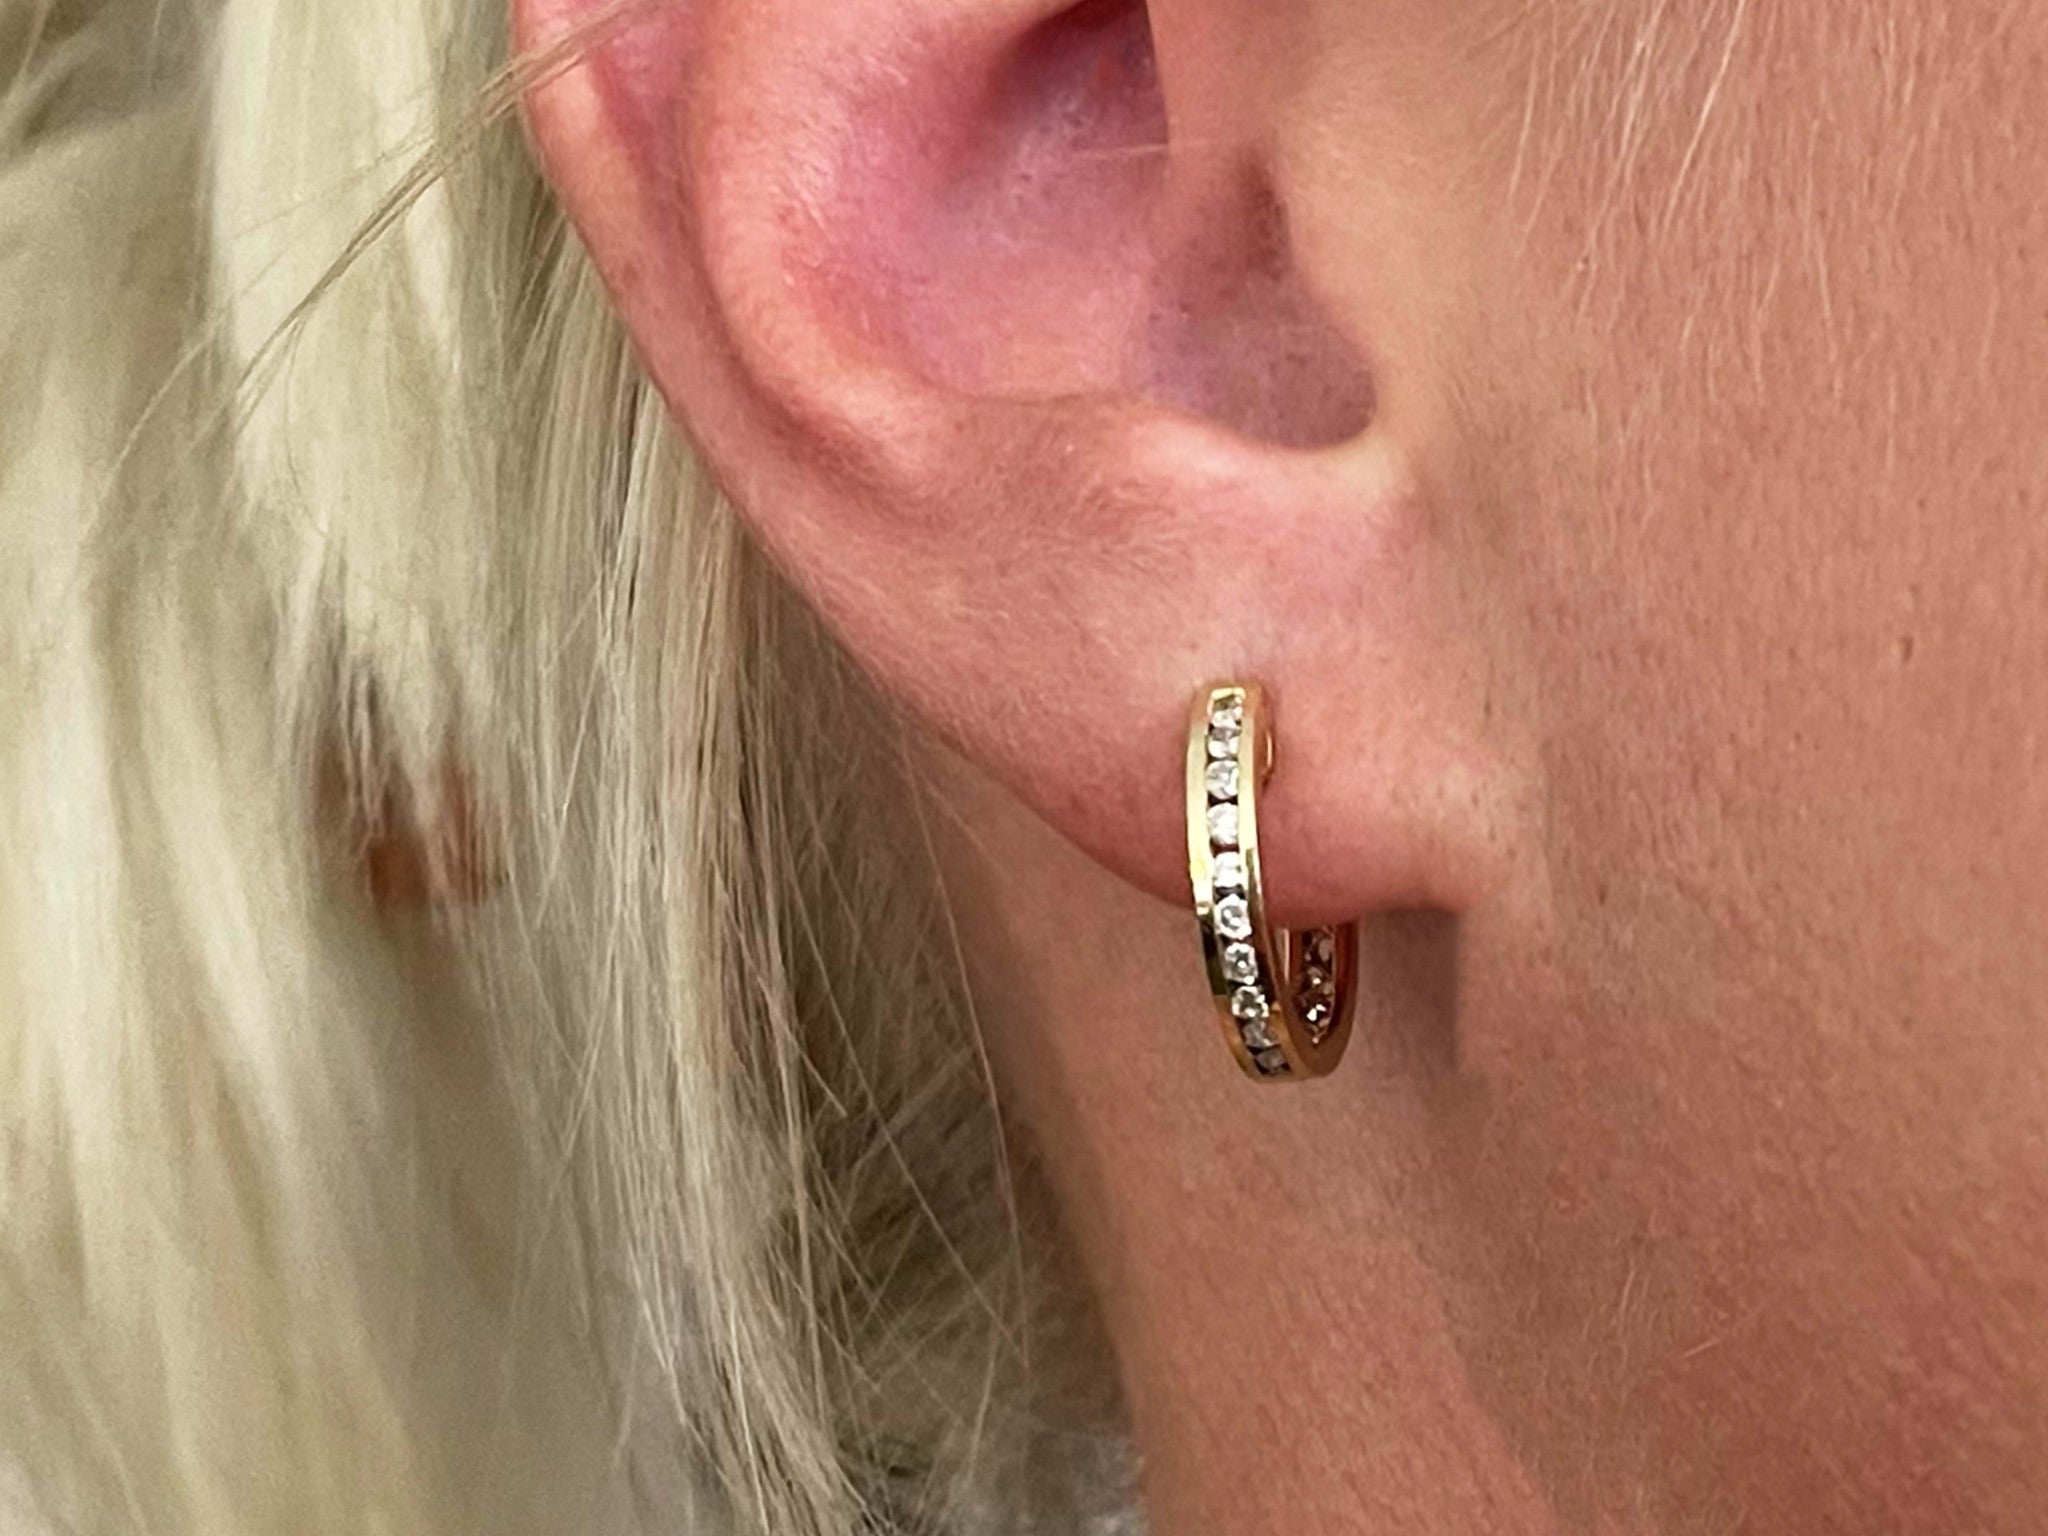 Diamond Hoop Earrings in 18k Yellow Gold